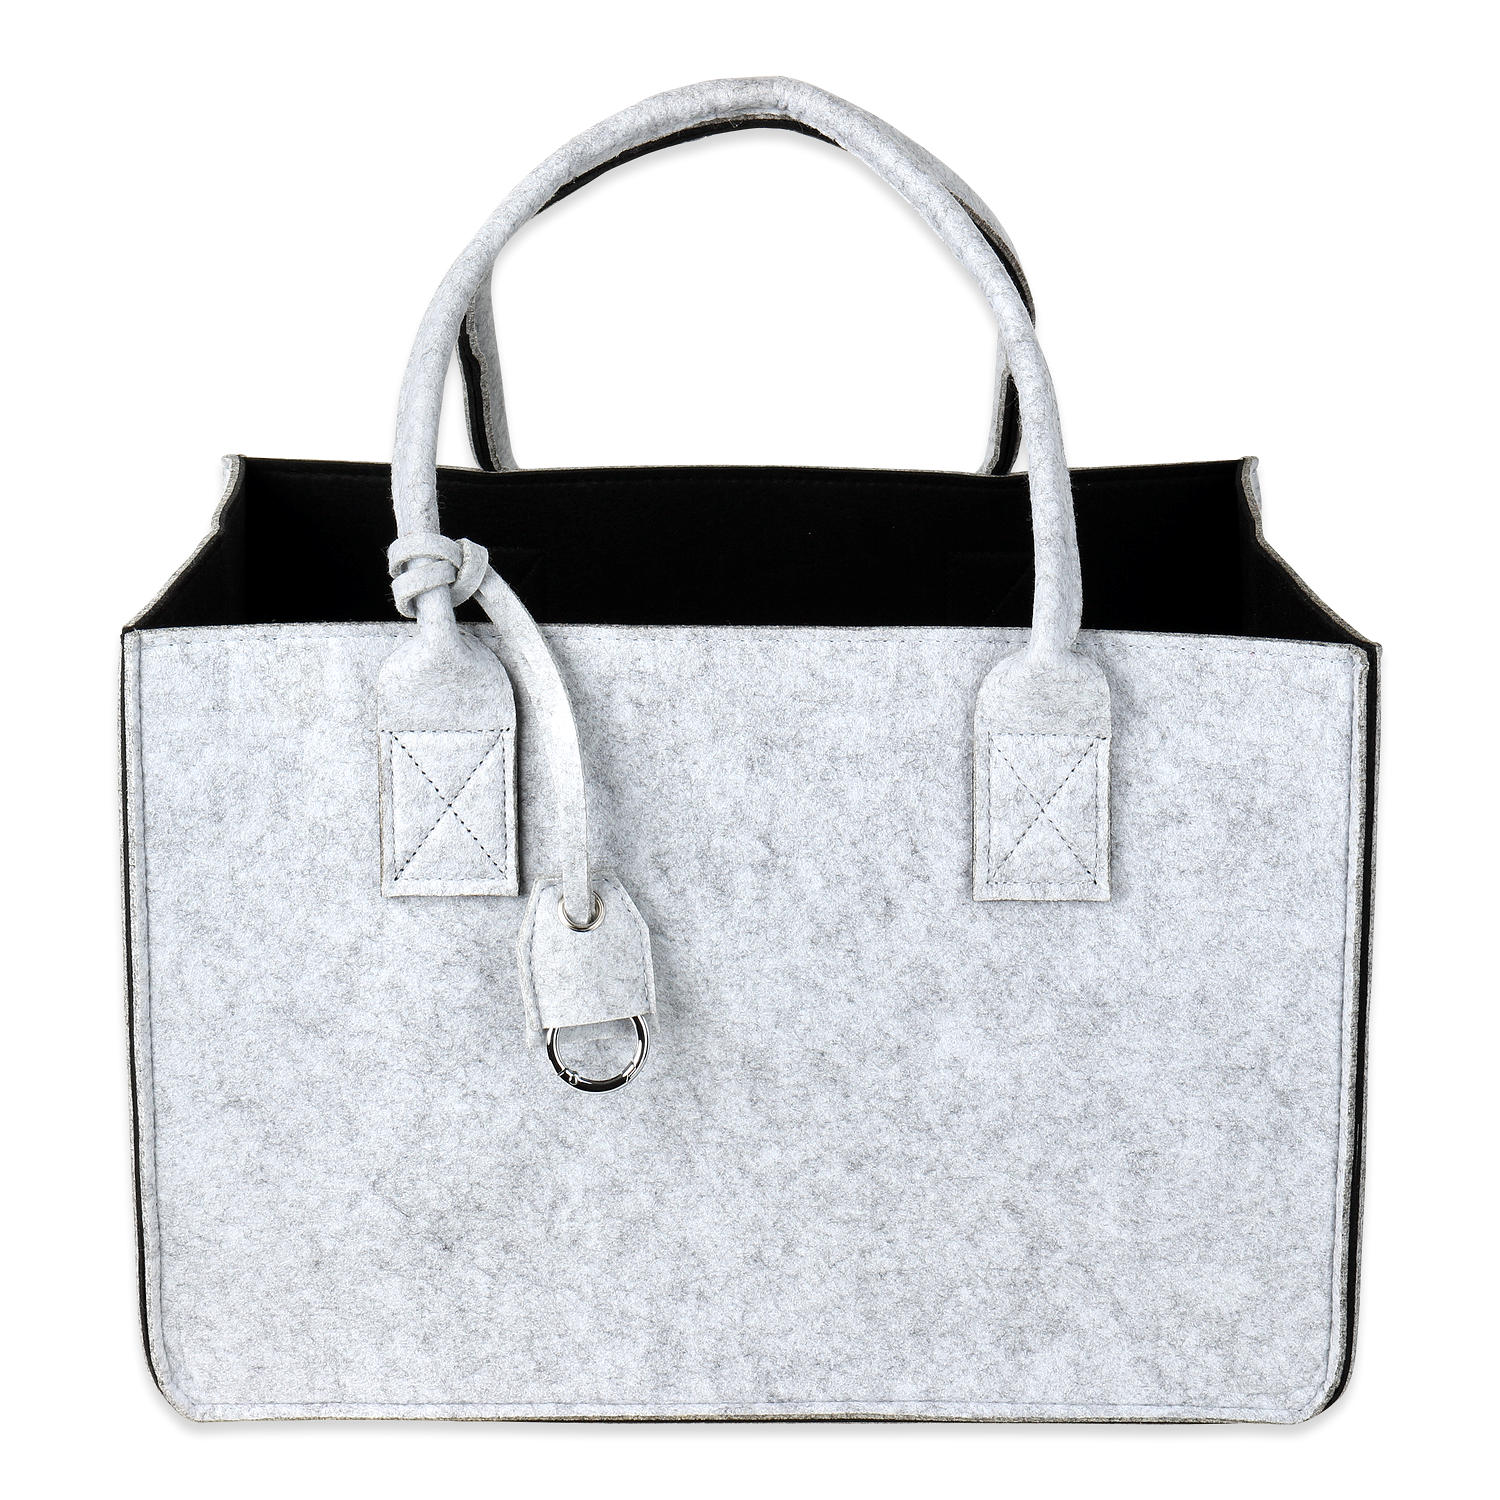 GILDE Filztasche Dillblüte, 41 cm, Einkaufstasche/Holztasche/Strandtasche –  reißfest & trägt viel Gewicht – polstert Ihre Einkäufe sicher ab und